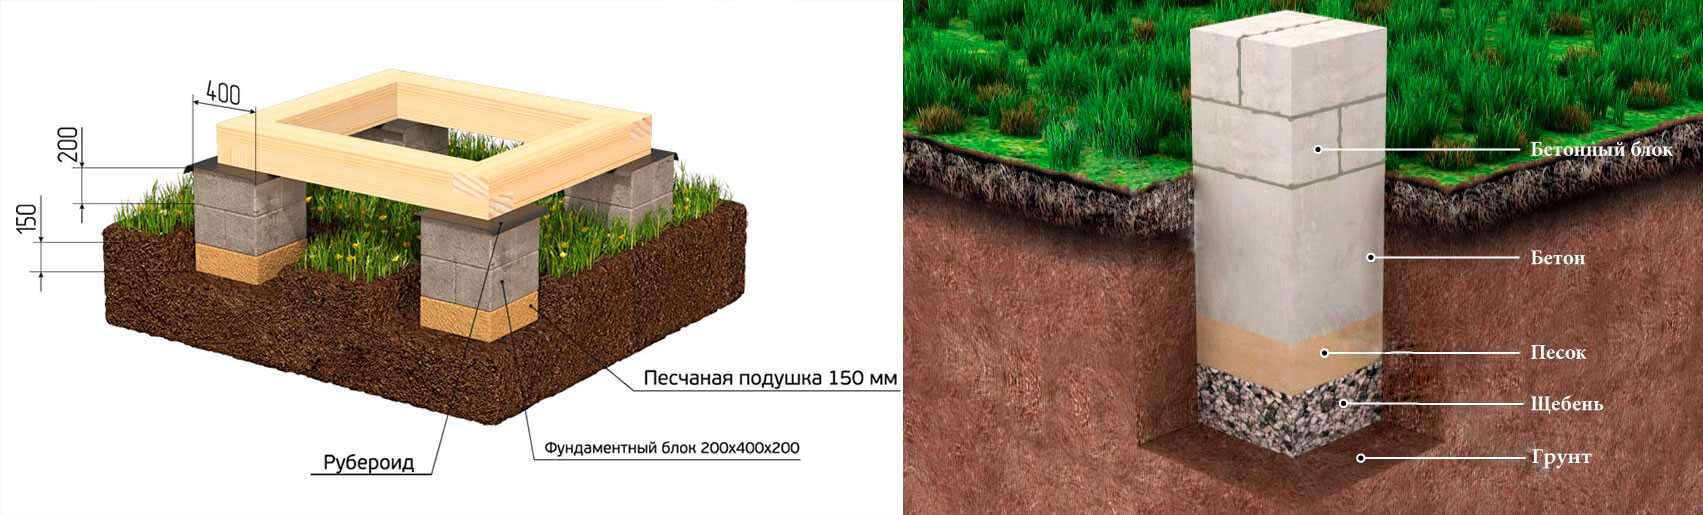 Какой фундамент лучше на глинистой почве?